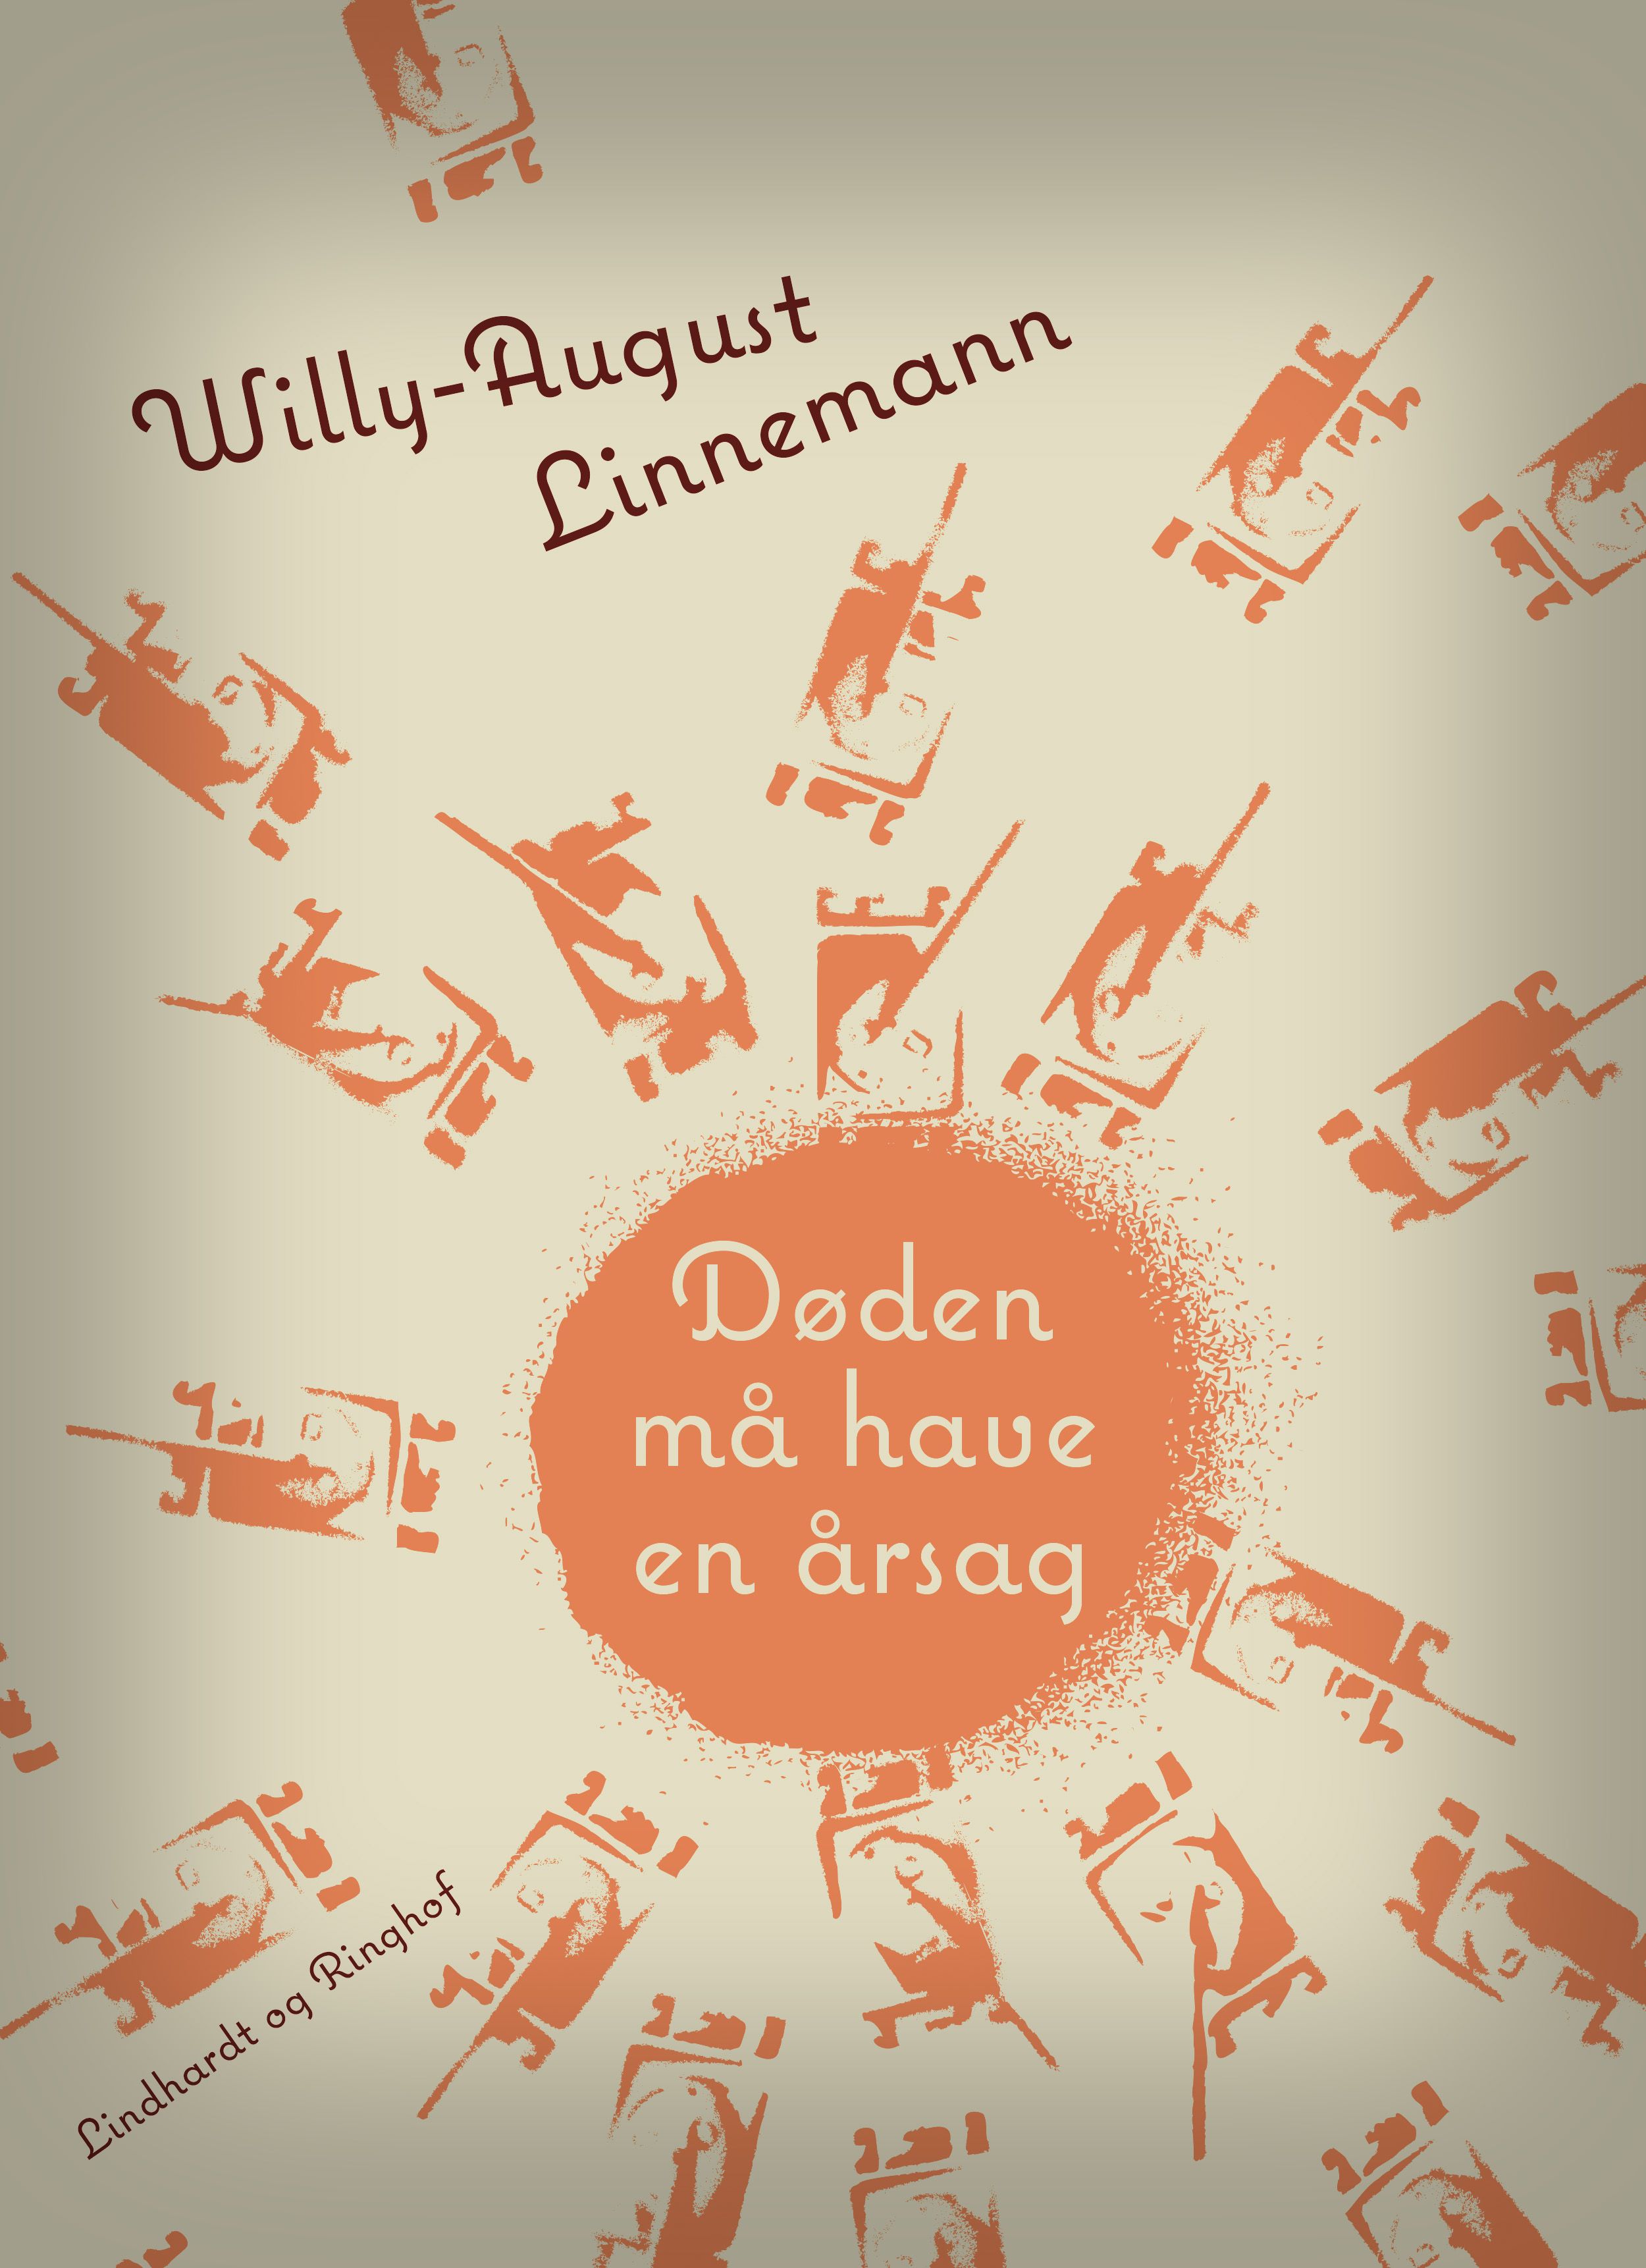 Døden må have en årsag, e-bog af Willy-August Linnemann